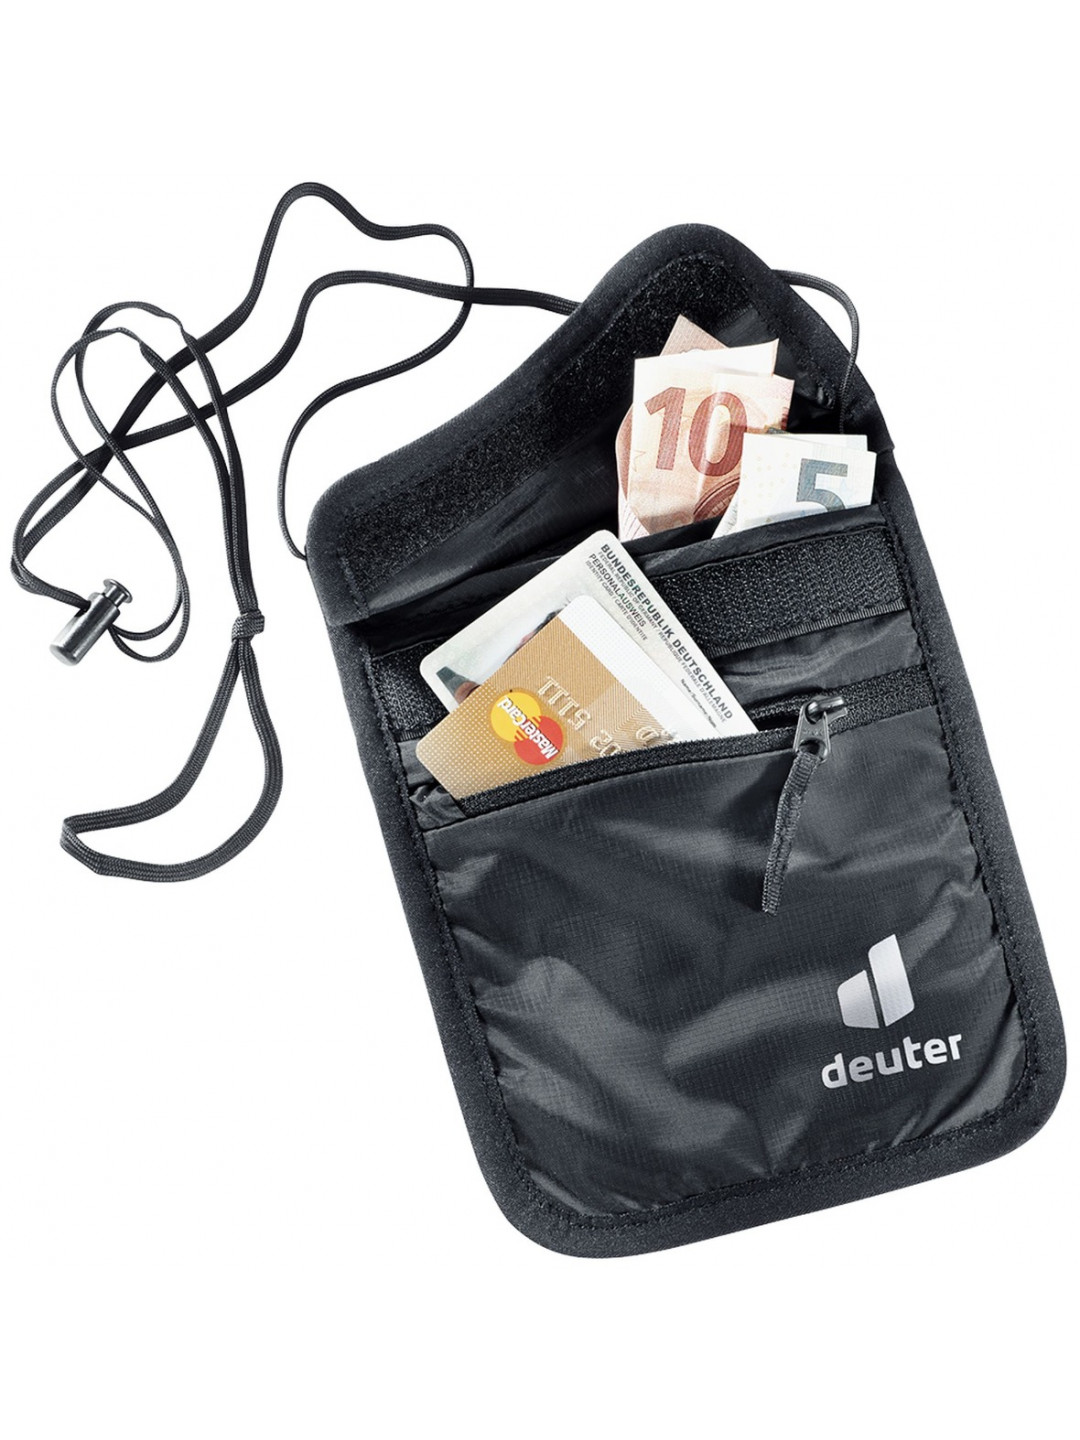 Deuter Security Wallet II Black